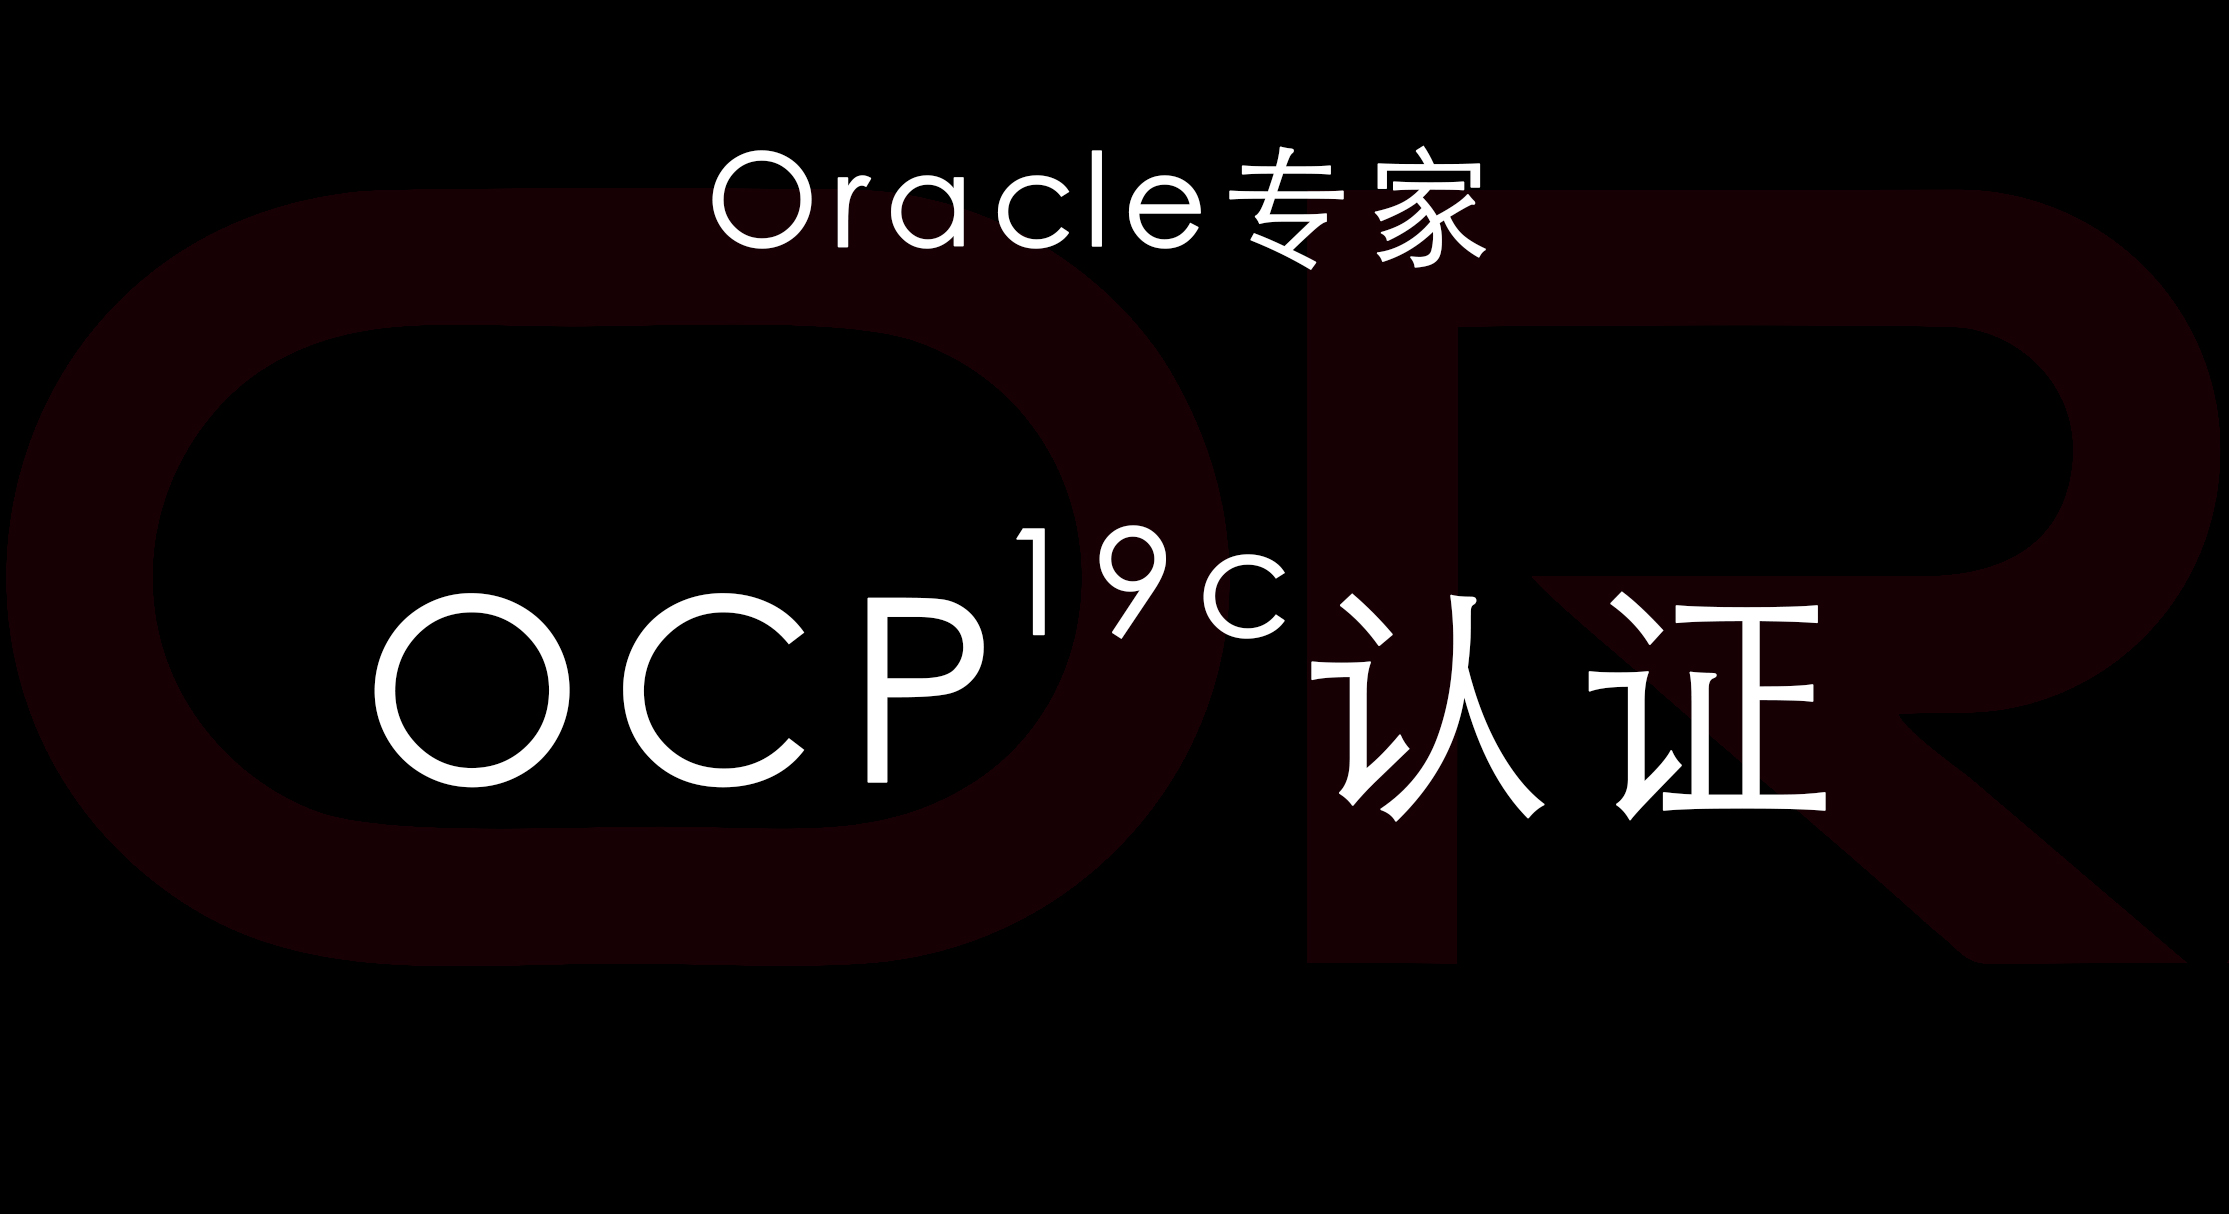 19c OCP认证